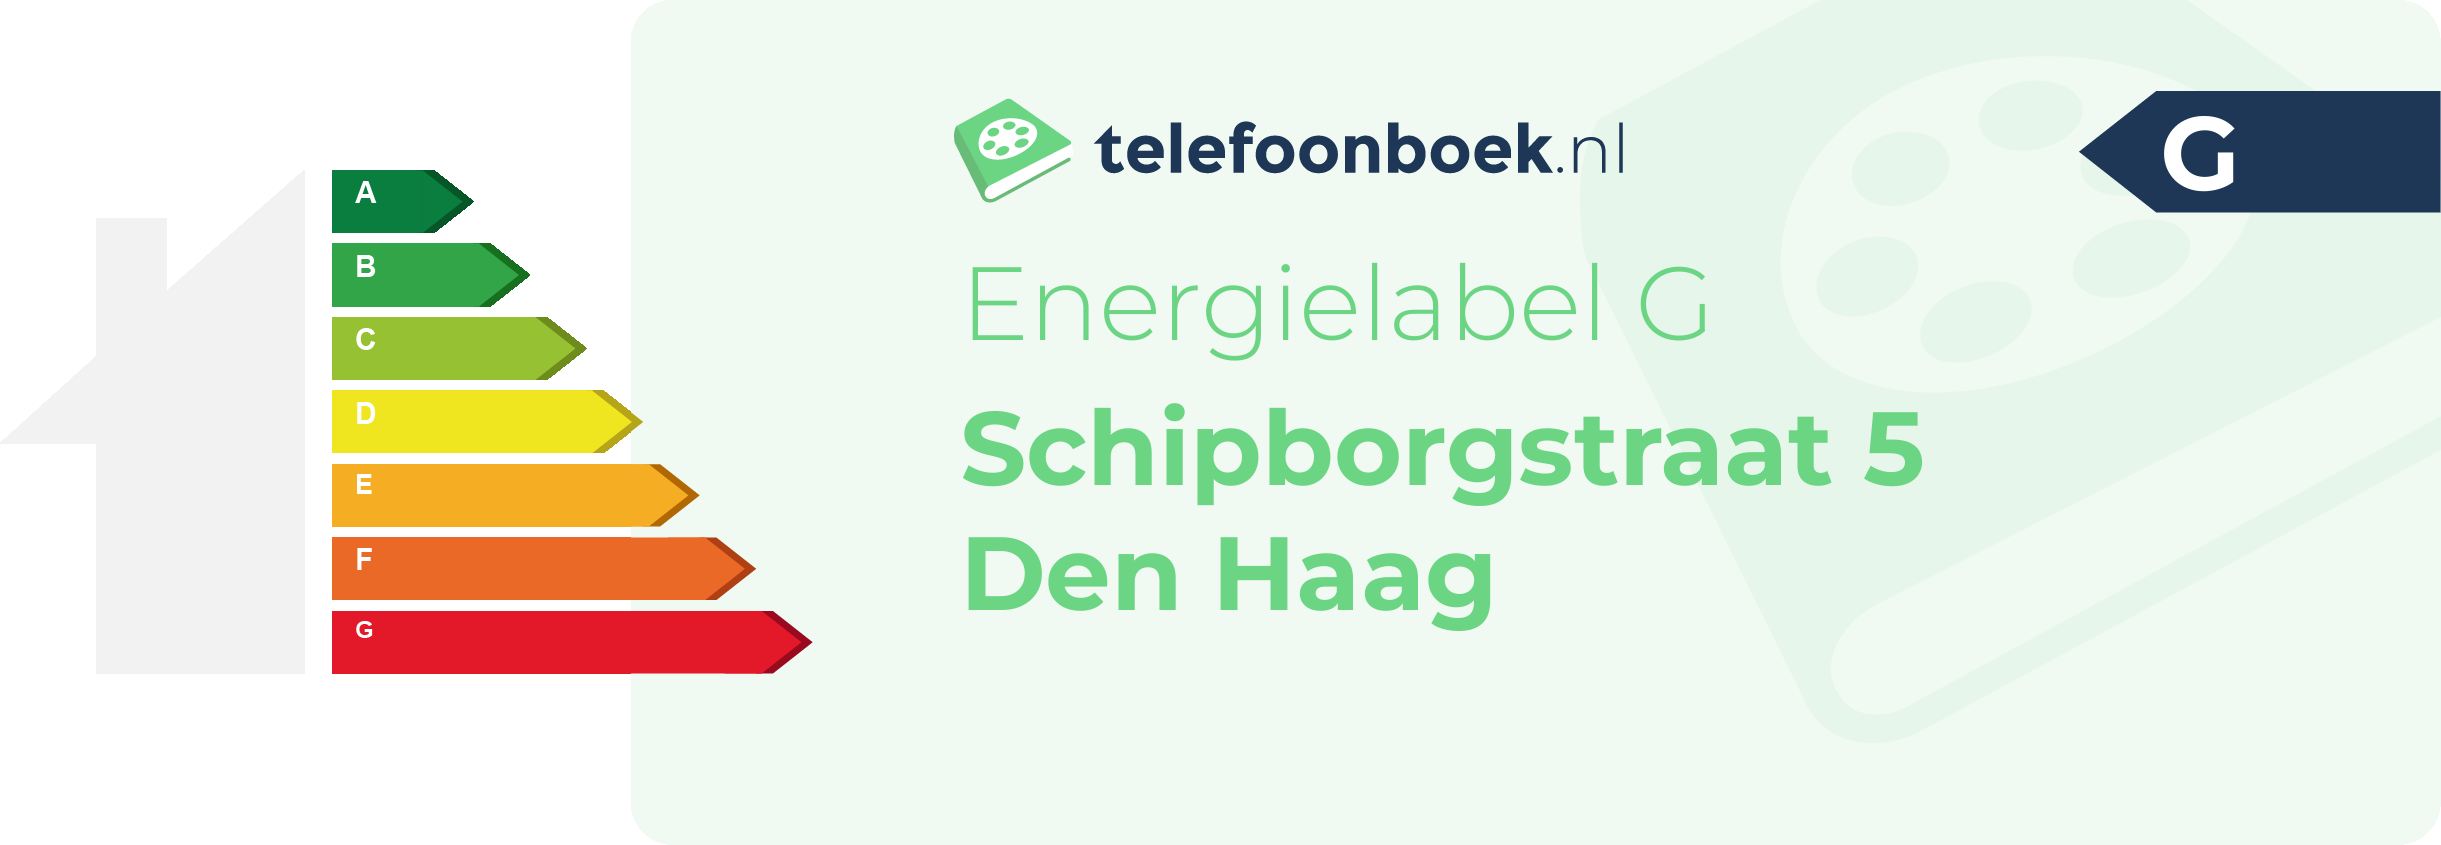 Energielabel Schipborgstraat 5 Den Haag